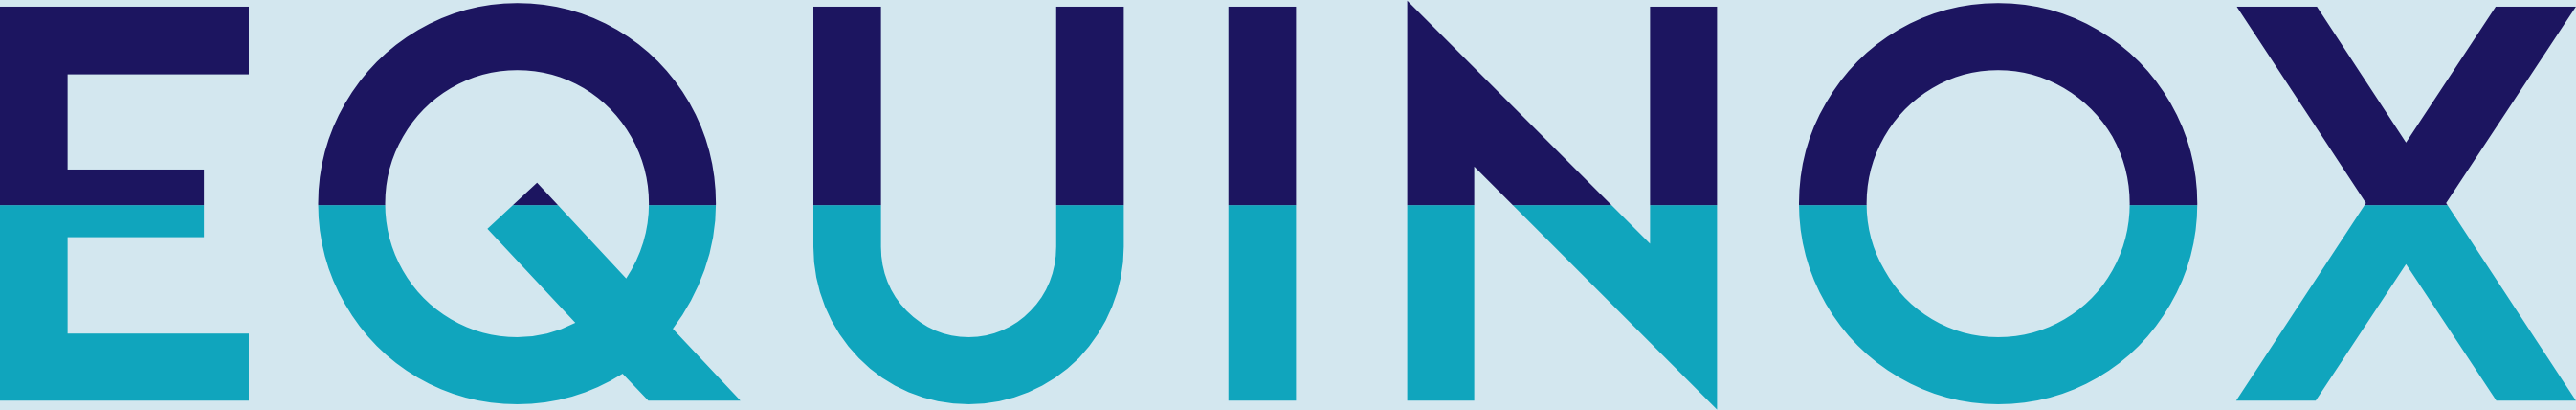 Equinox - Agentur für ganzheitliche Kommunikation - Logo